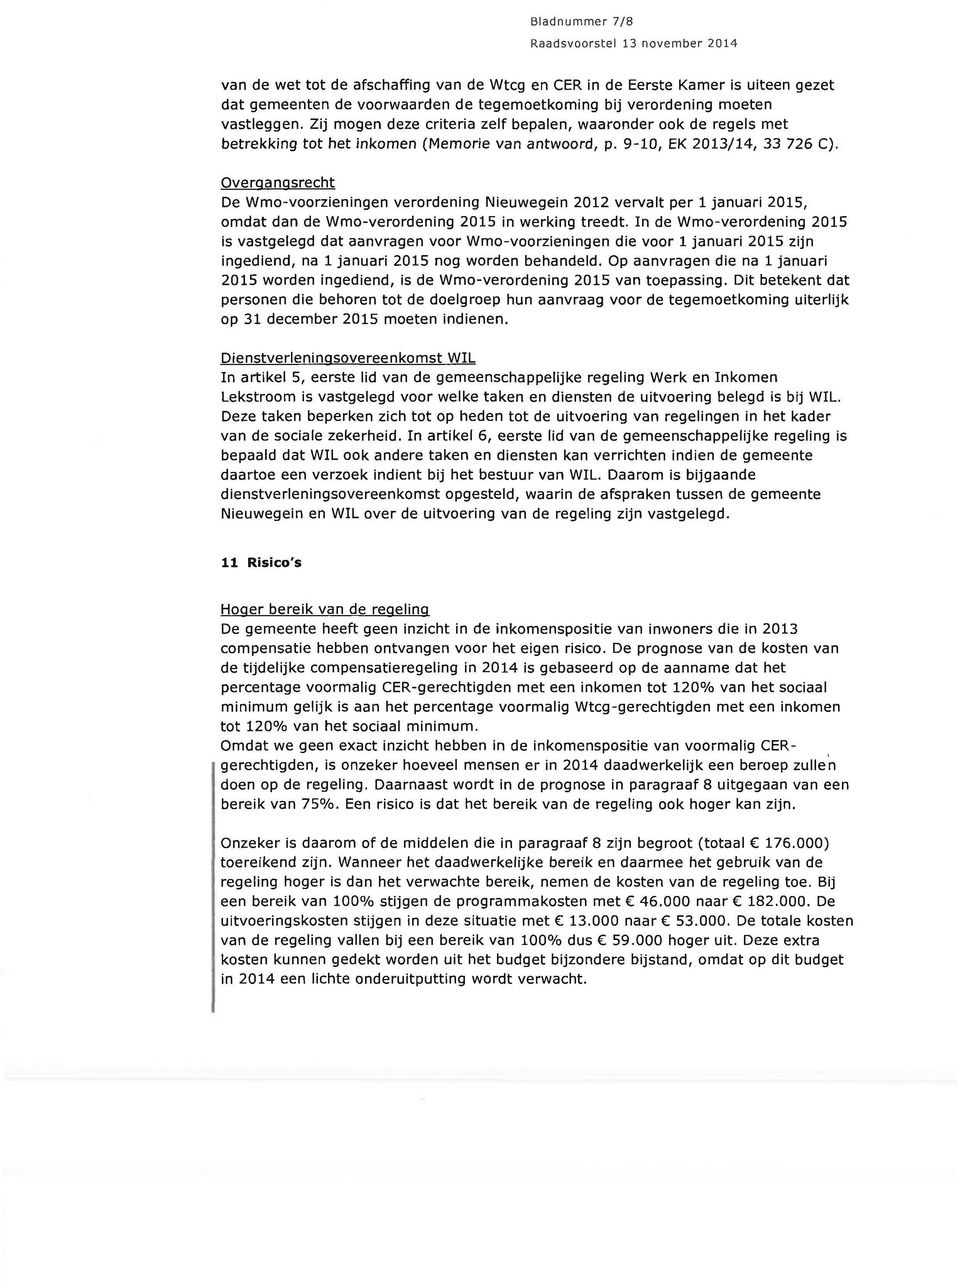 Overgangsrecht De Wmo-voorzieningen verordening Nieuwegein 2012 vervalt per 1 januari 2015, omdat dan de Wmo-verordening 2015 in werking treedt.